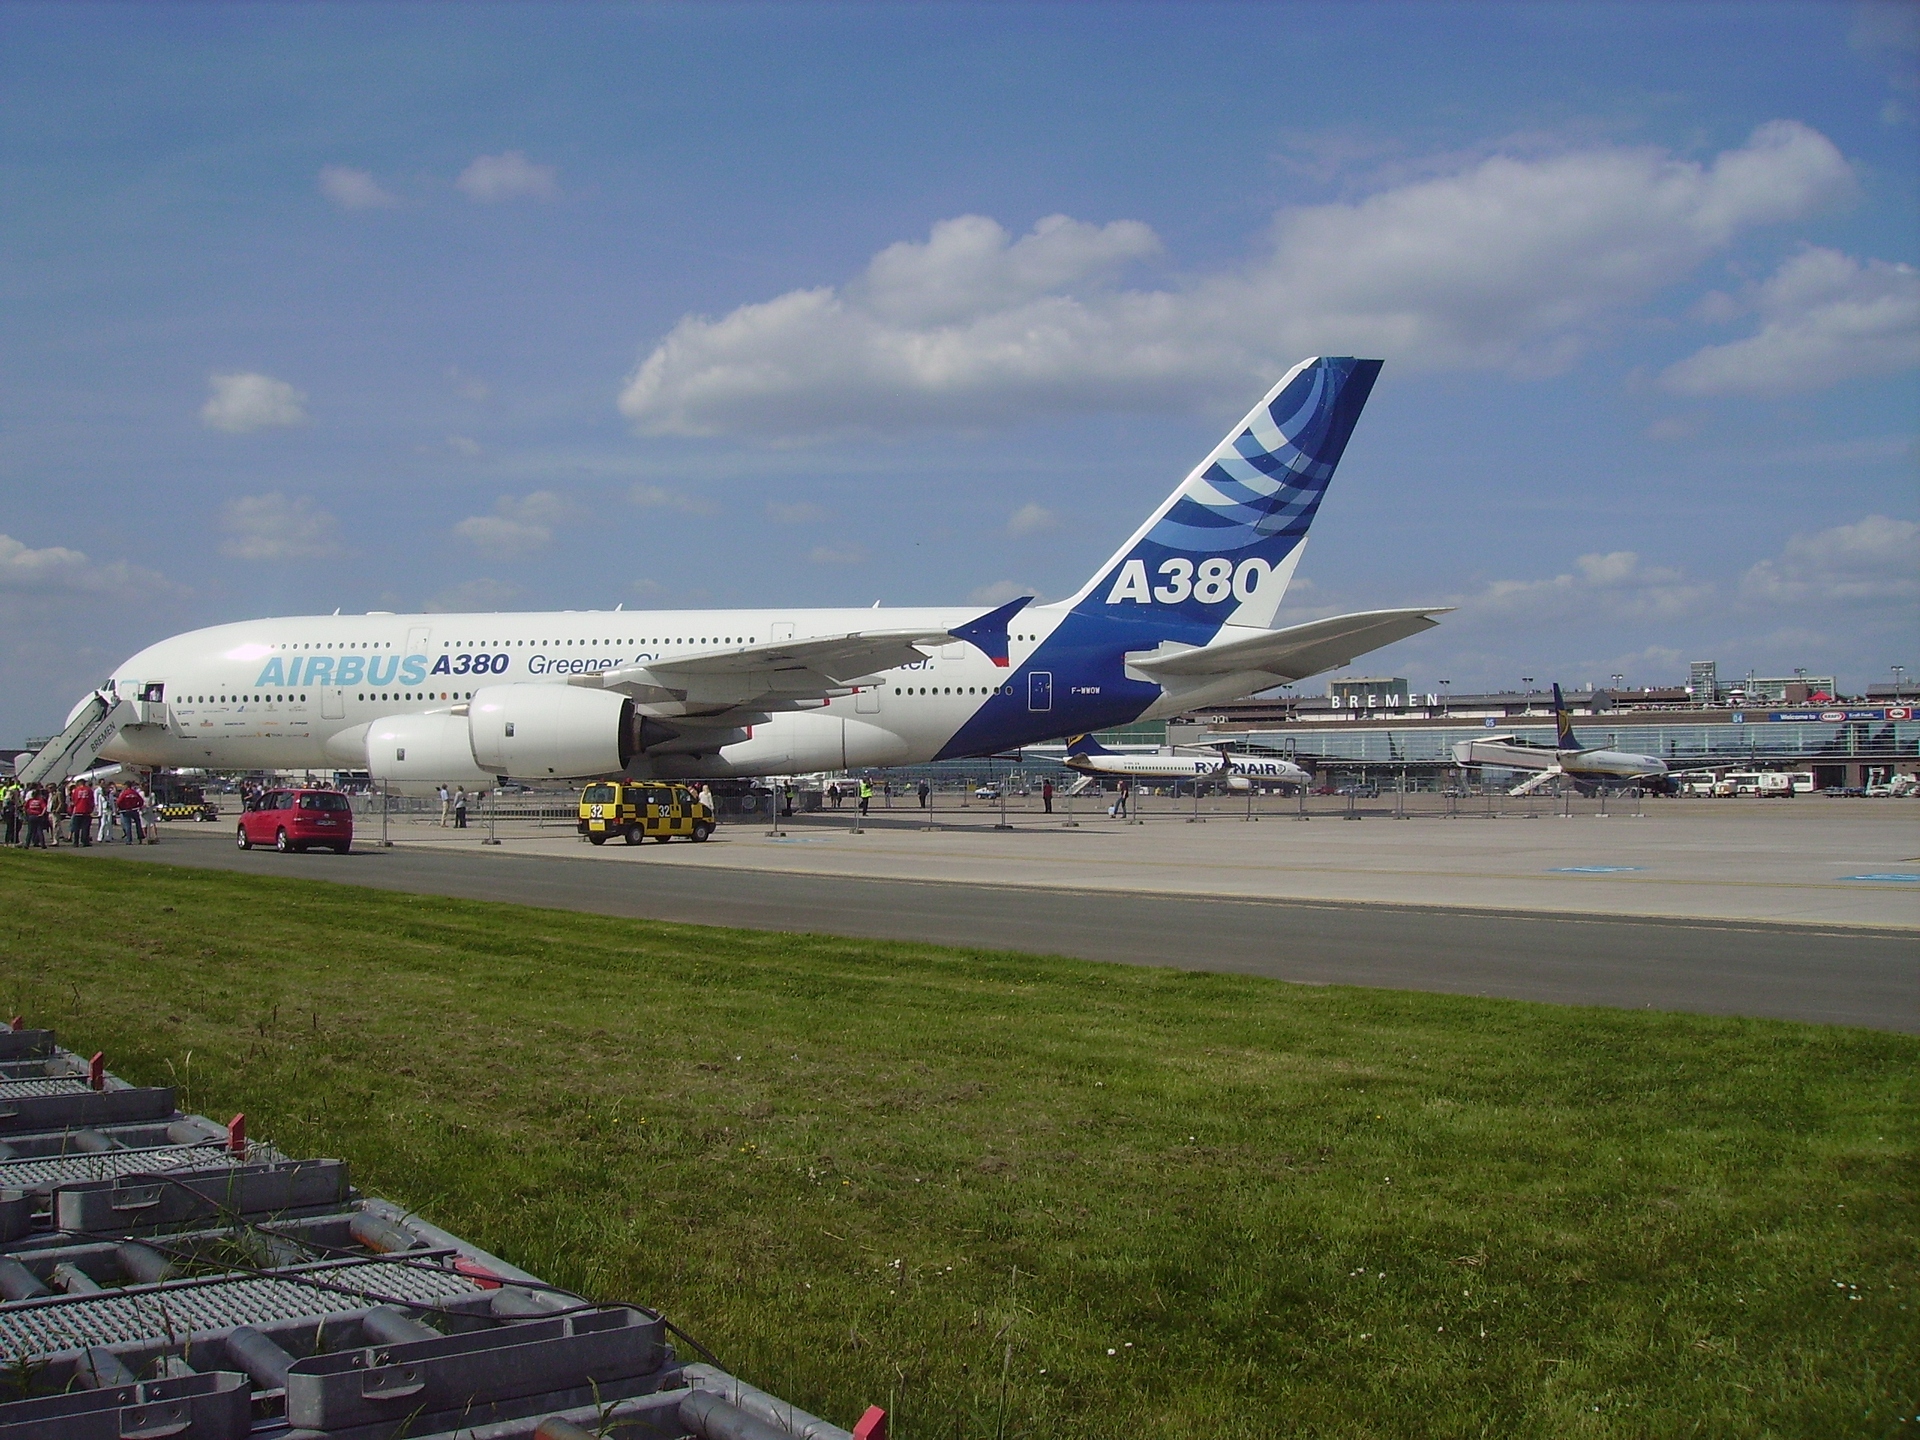 Airbus Photo